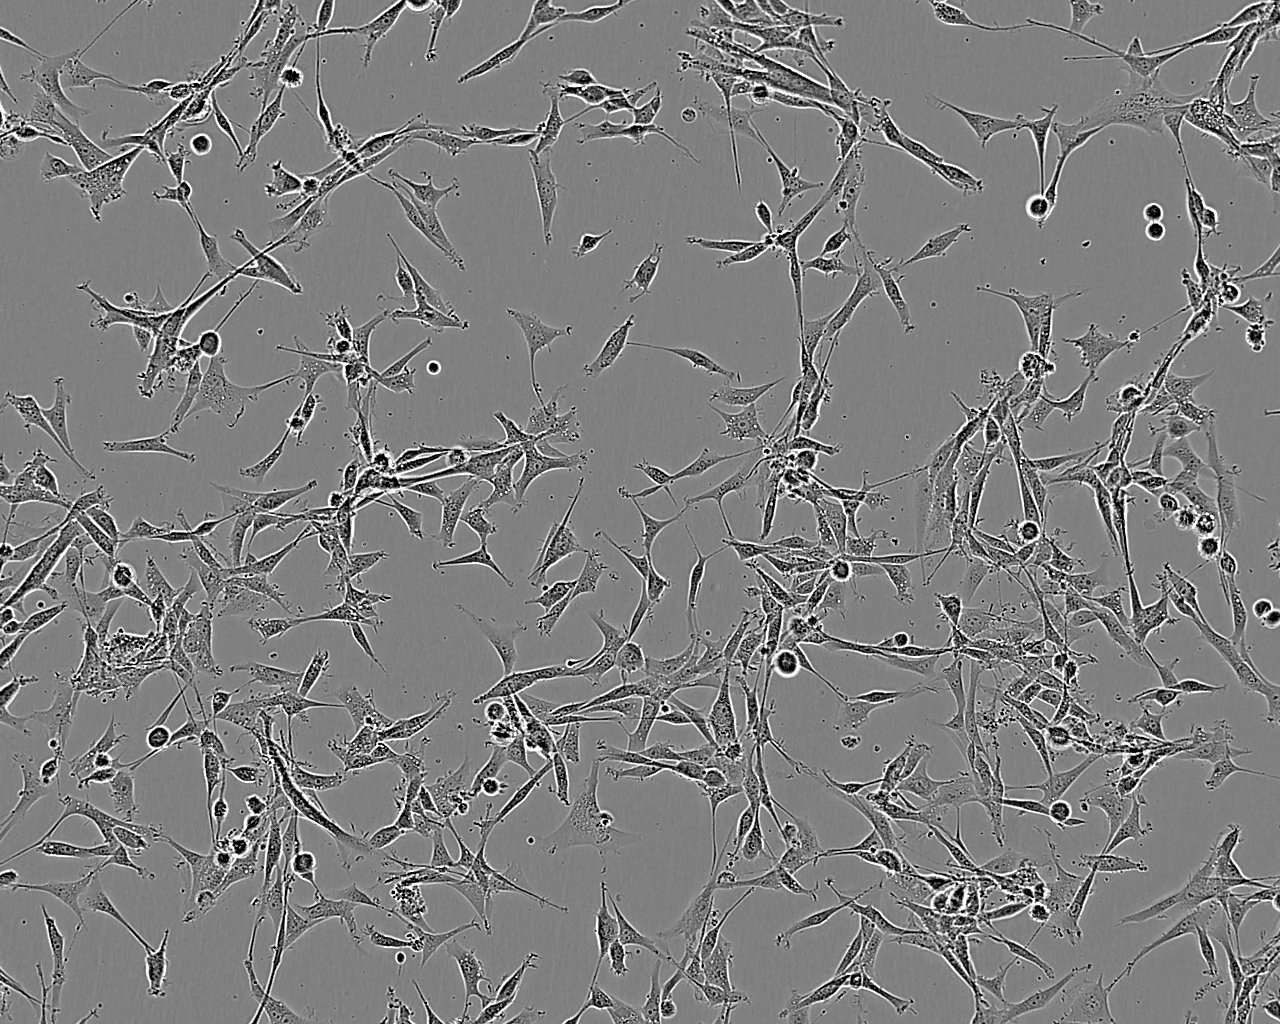 NCI-H1404 epithelioid cells人乳头状腺癌细胞系